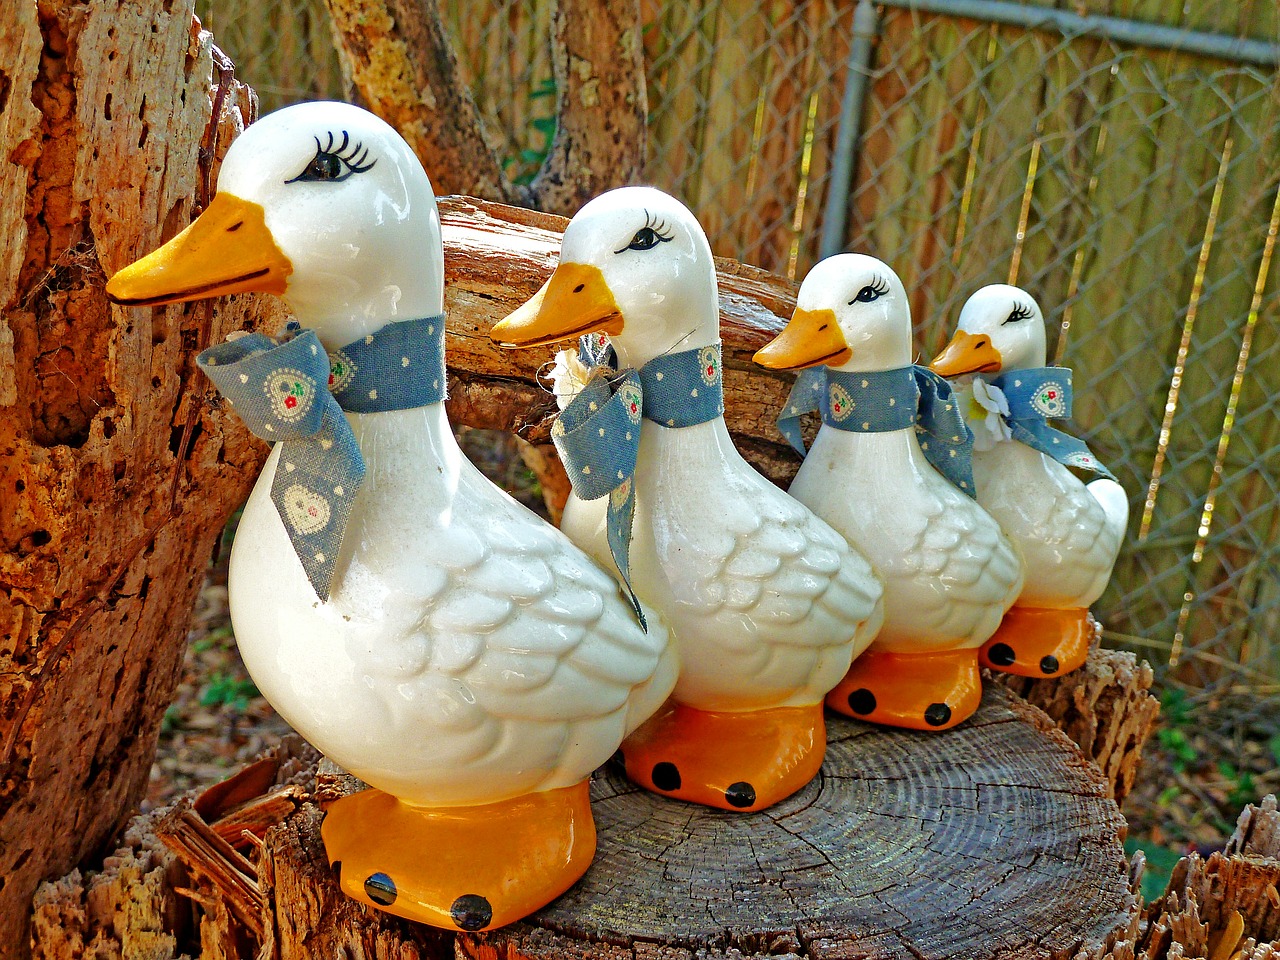 ducks ceramics figures free photo